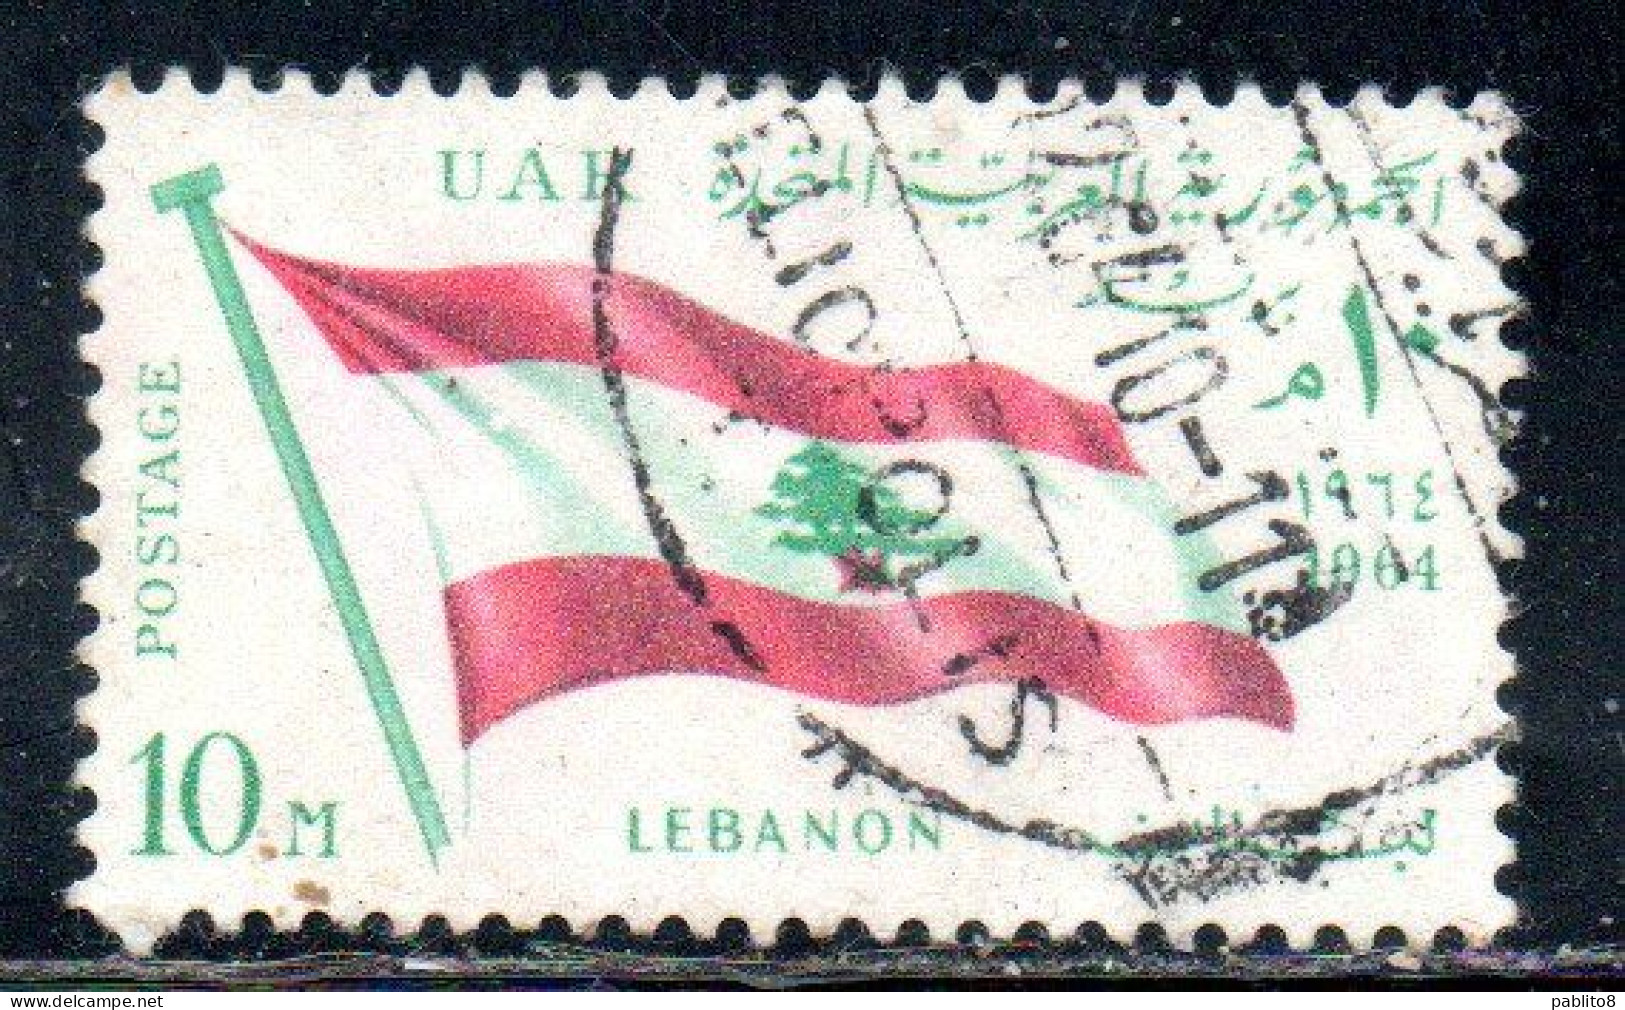 UAR EGYPT EGITTO 1964 SECOND MEETING OF HEADS STATE ARAB LEAGUE FLAG OF LEBANON 10m USED USATO OBLITERE' - Gebruikt